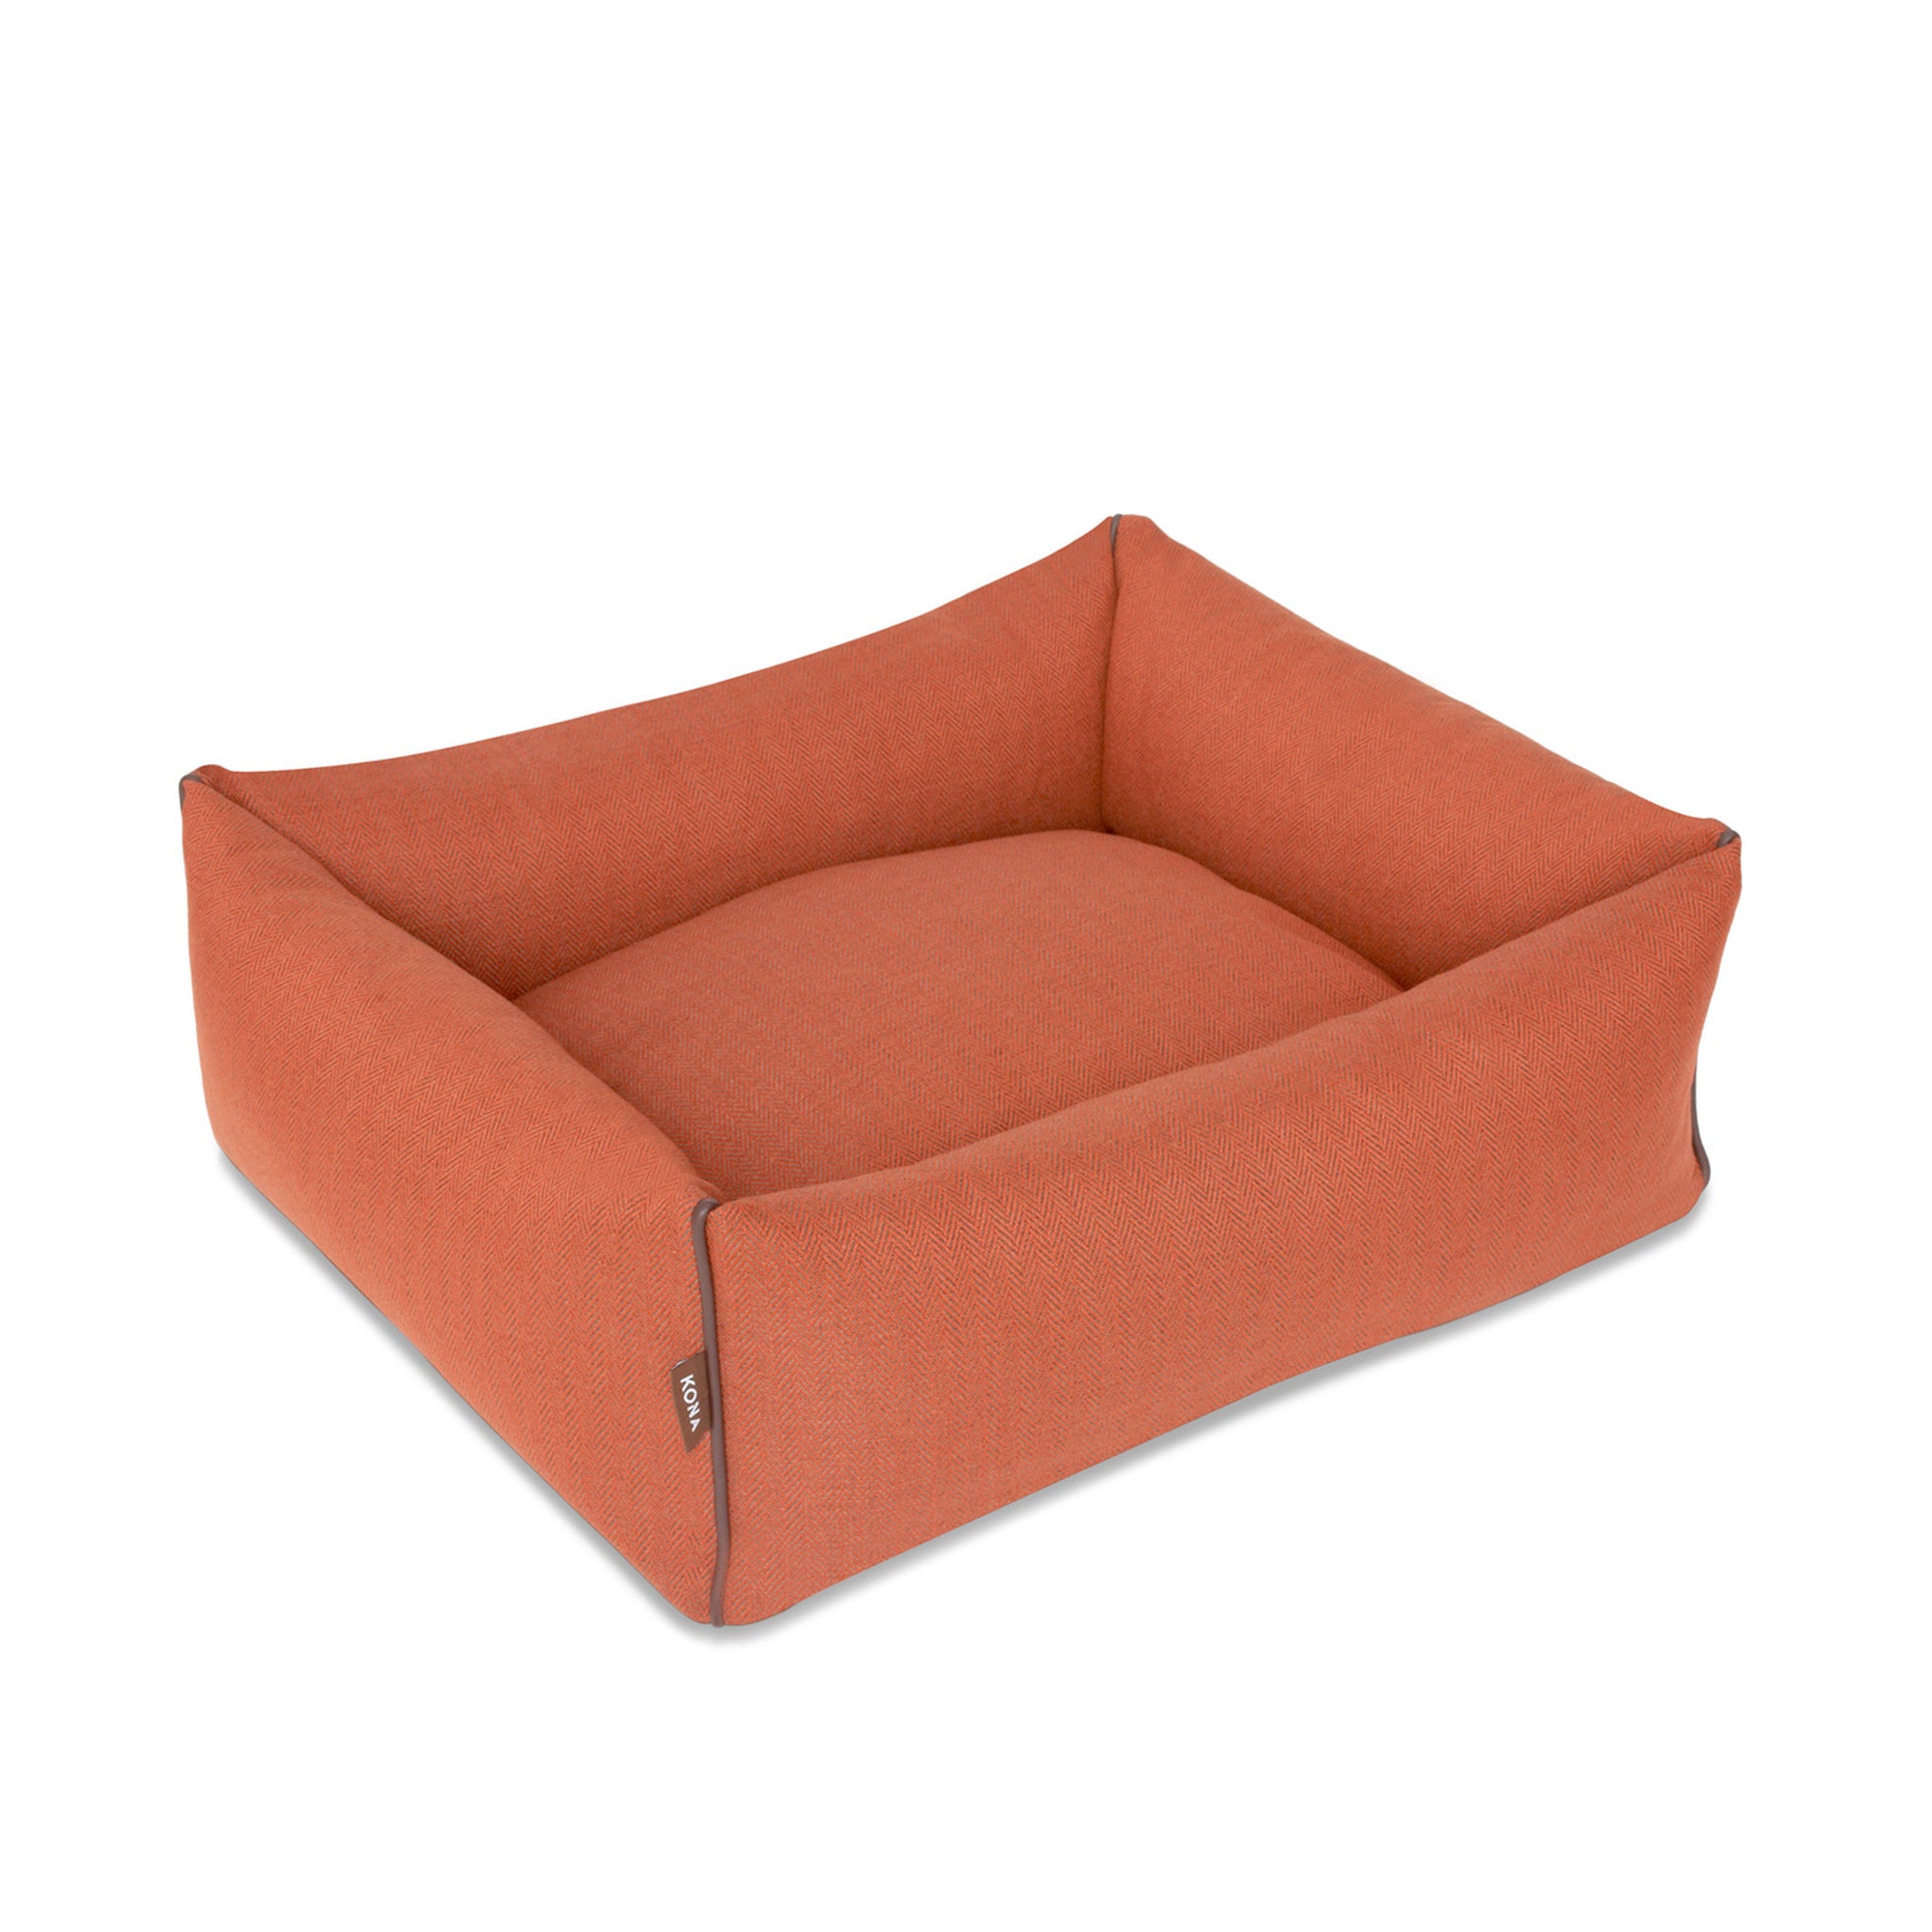 KONA CAVE® designer dog bed in elegant orange herringbone fabric with leather trim.